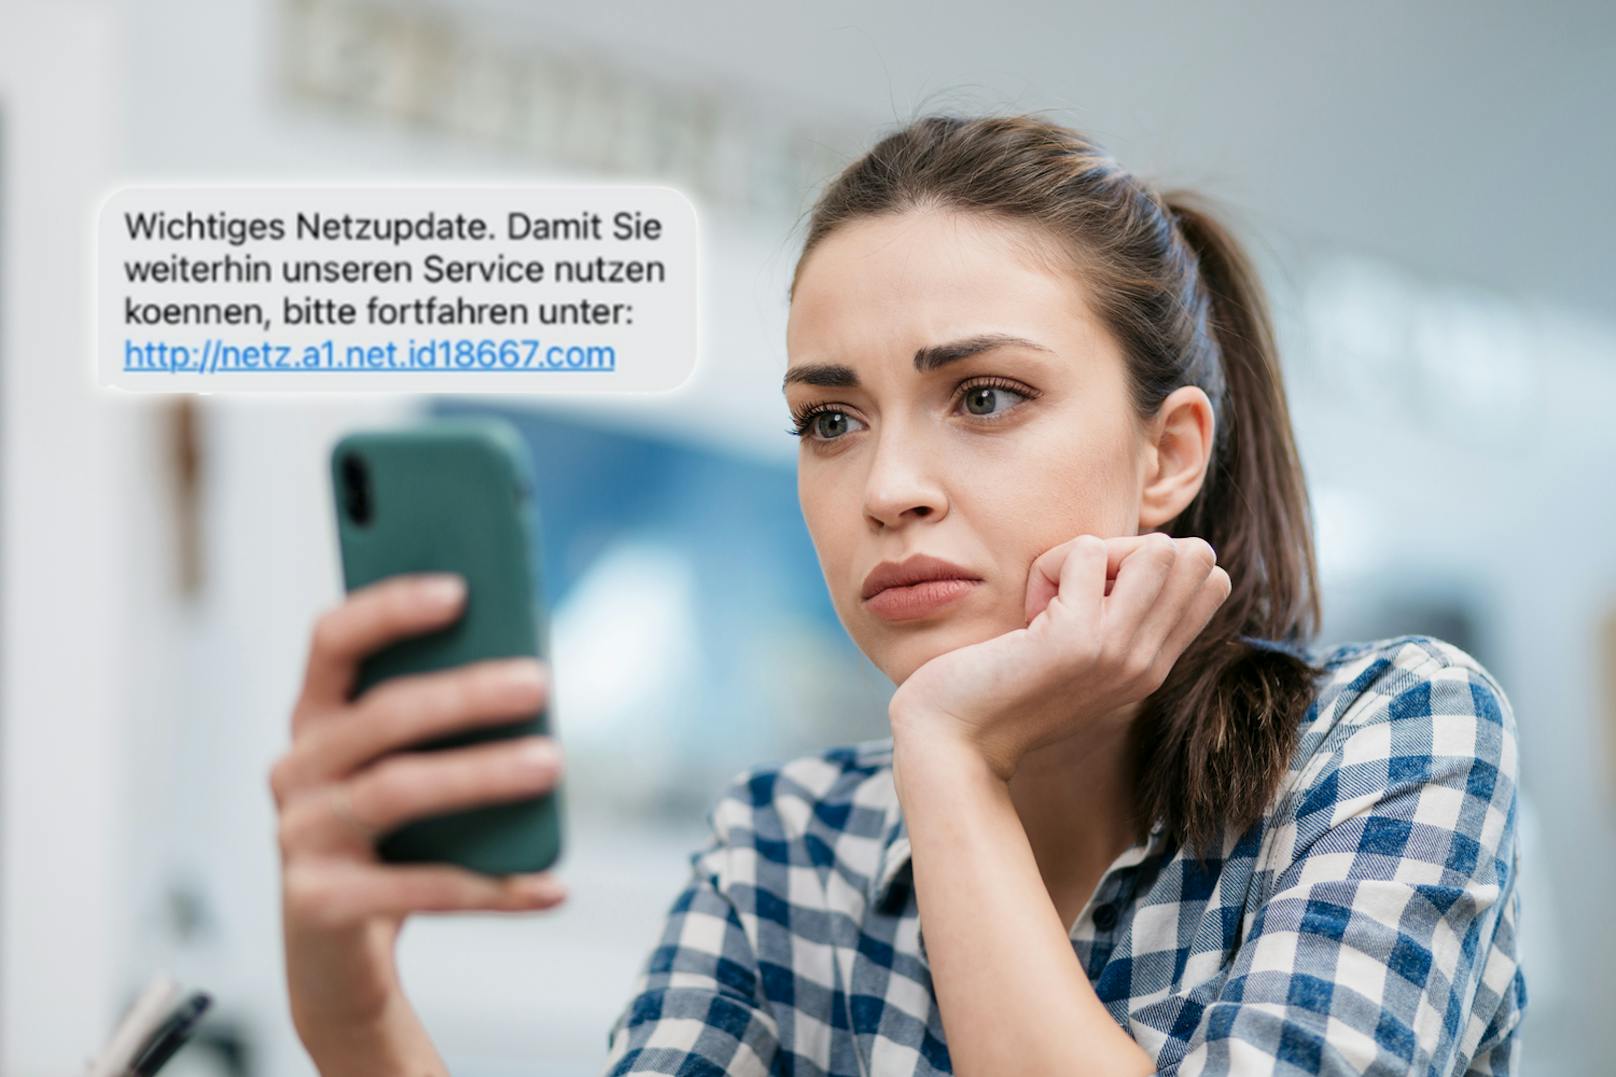 "Netzupdate" – A1 warnt seine Kunden vor dieser SMS